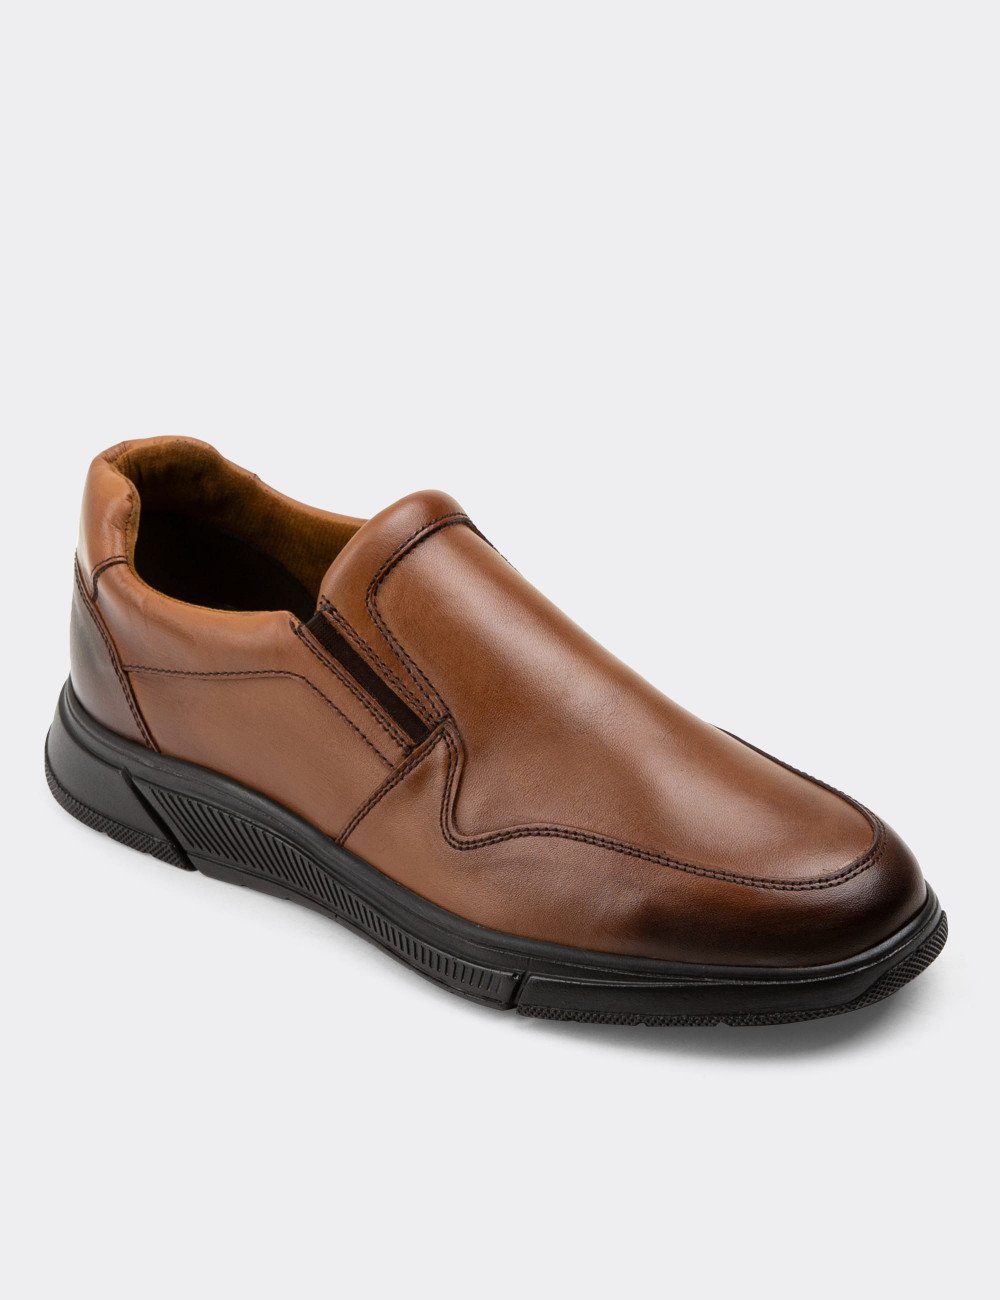 Hakiki Deri Taba Rengi Loafer Erkek Ayakkabı - 01874MTBAC01